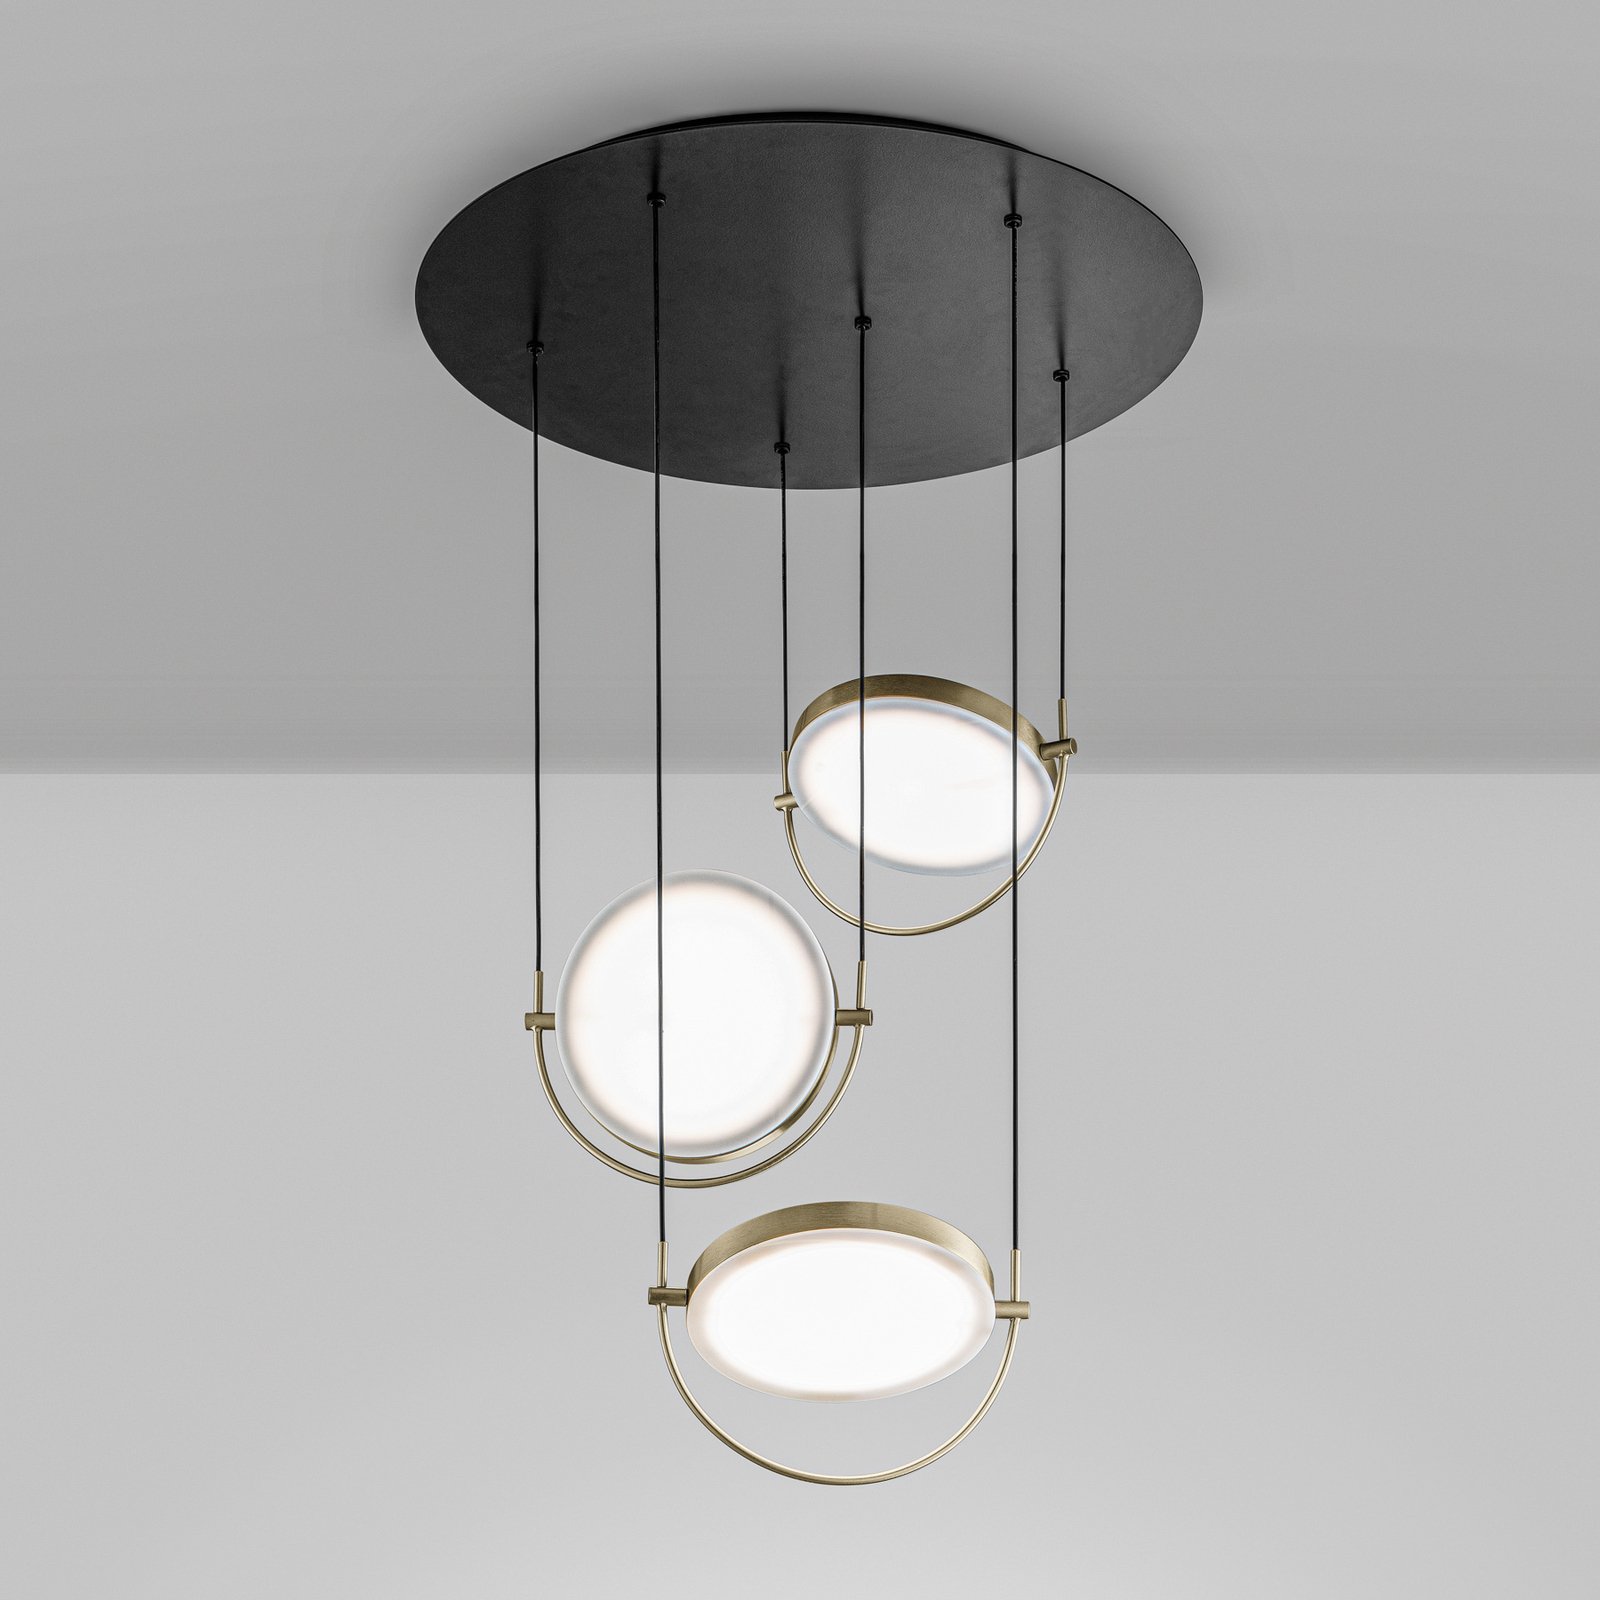 LED-hänglampa Giotto, 3 lampor, guld